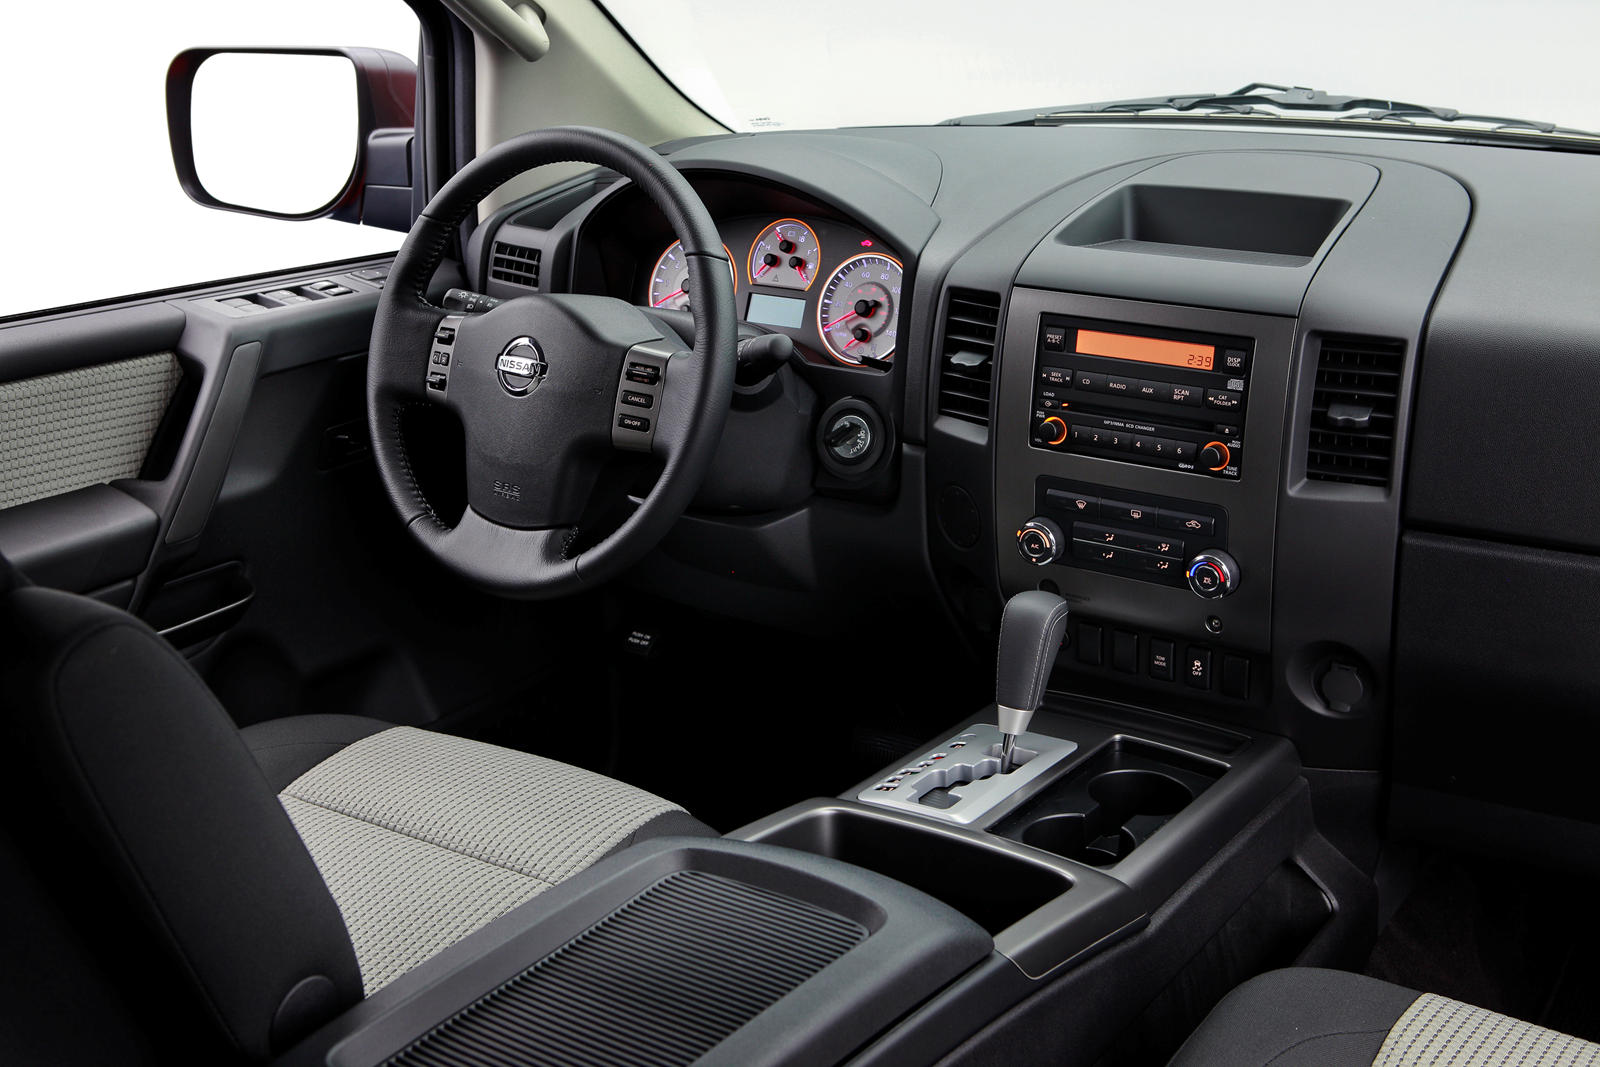 2011 Nissan Titan Interior Photos | CarBuzz